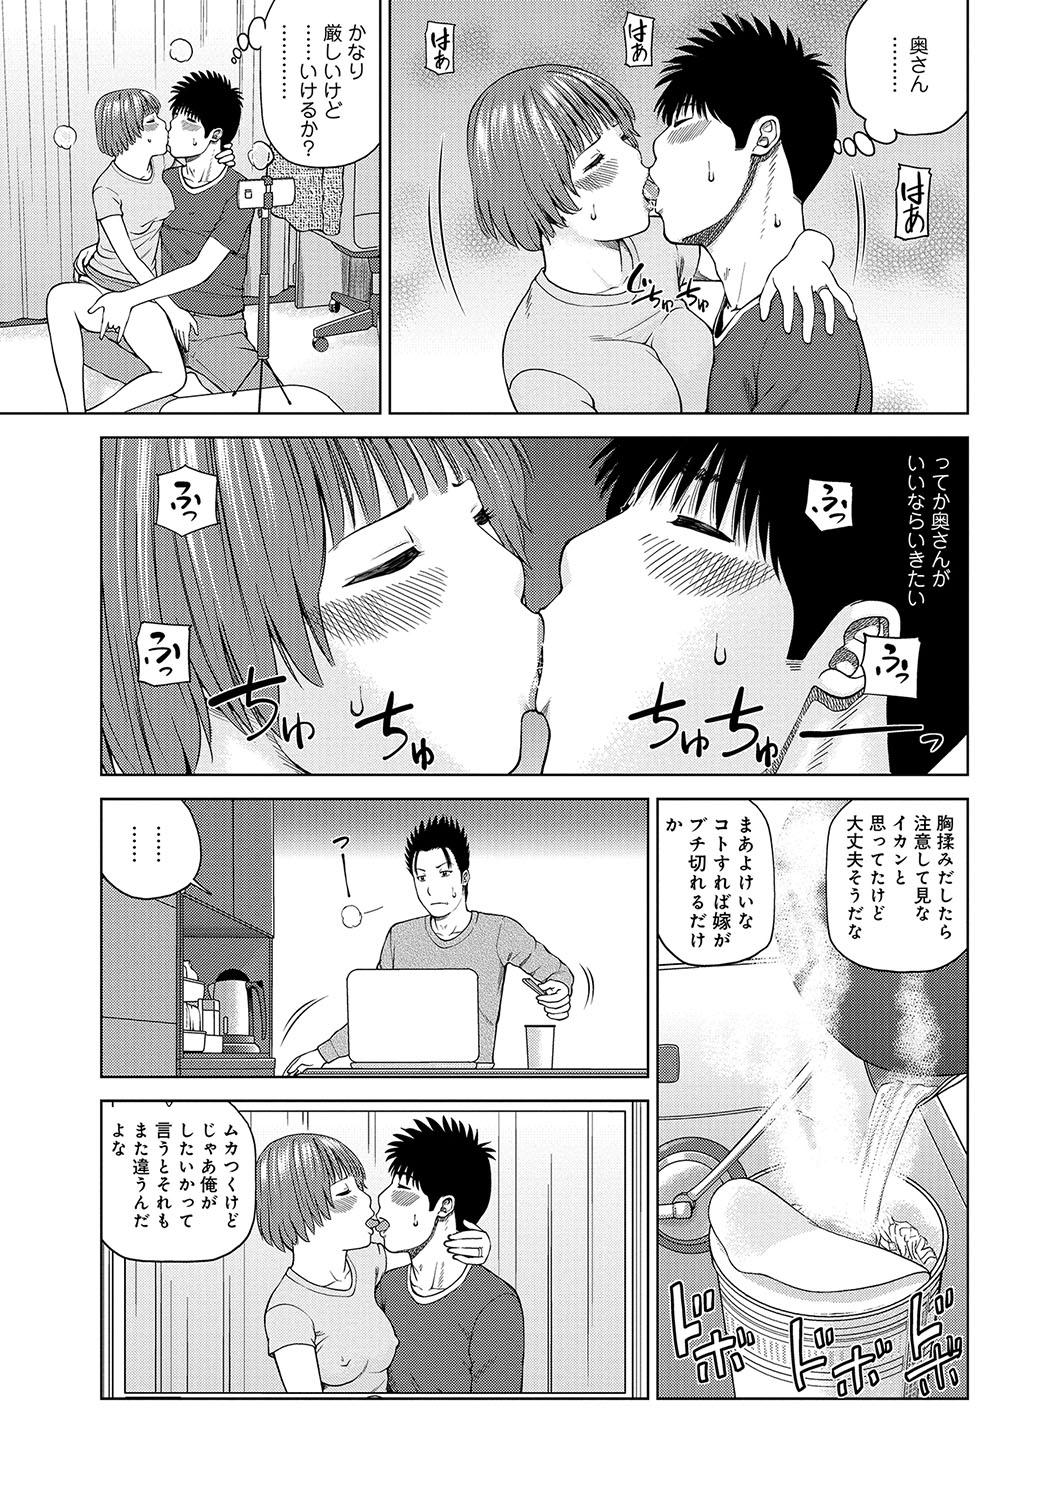 Sislovesme WEB Han Comic Geki Yaba! Vol.96 Full - Page 10